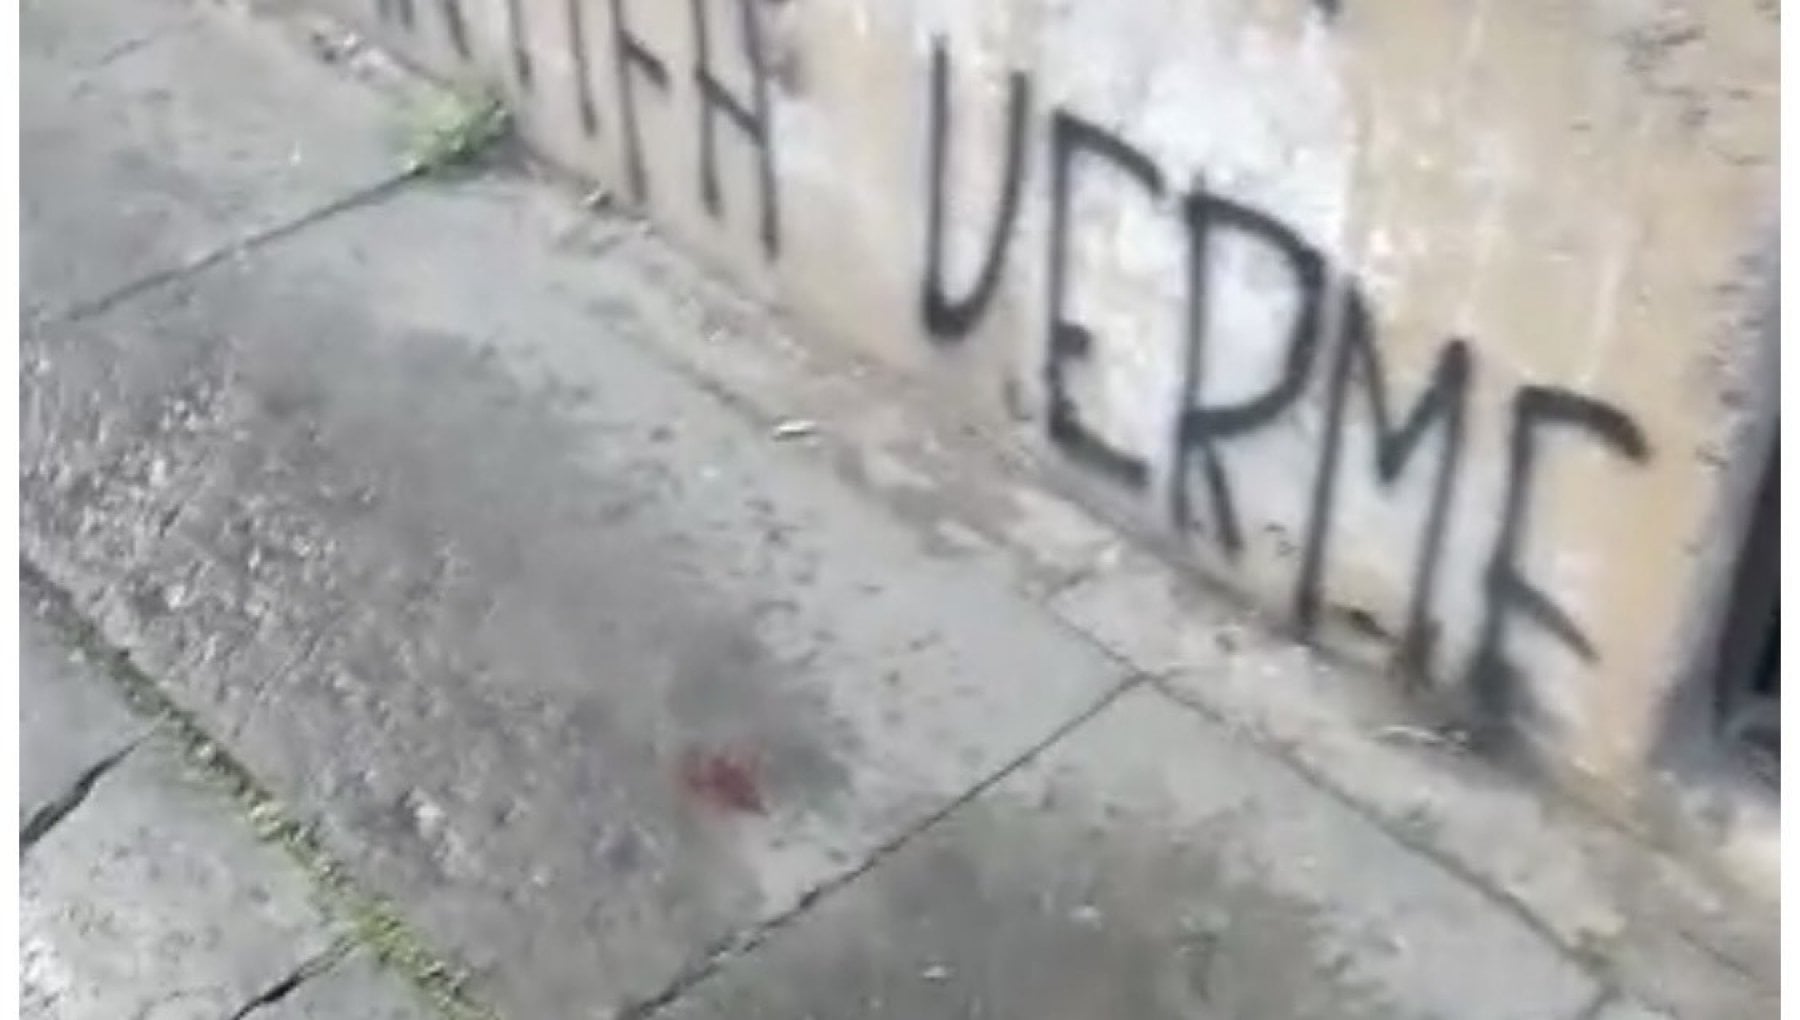 “Roma è fascista”: abominio sui muri del Liceo Tasso